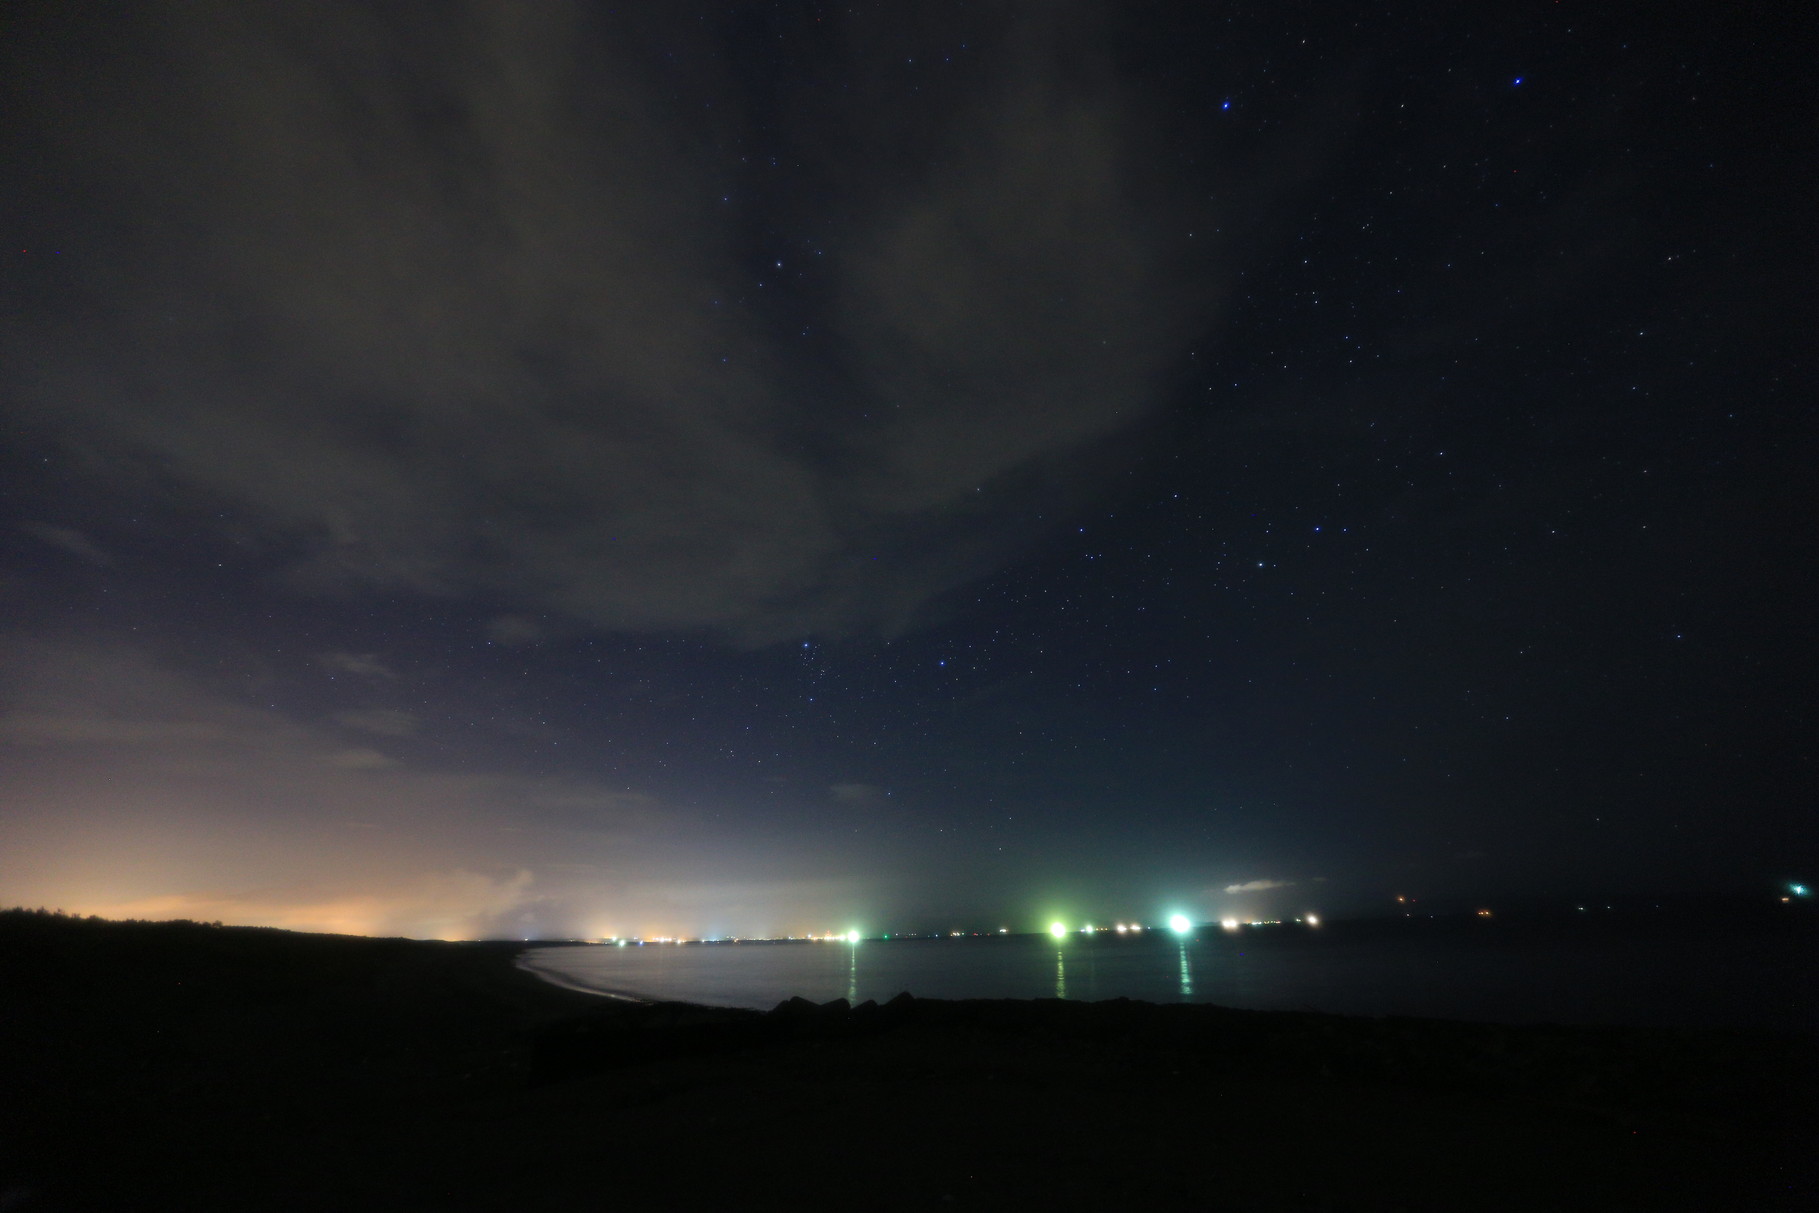 柏原海岸から志布志方面の夜景と星空。